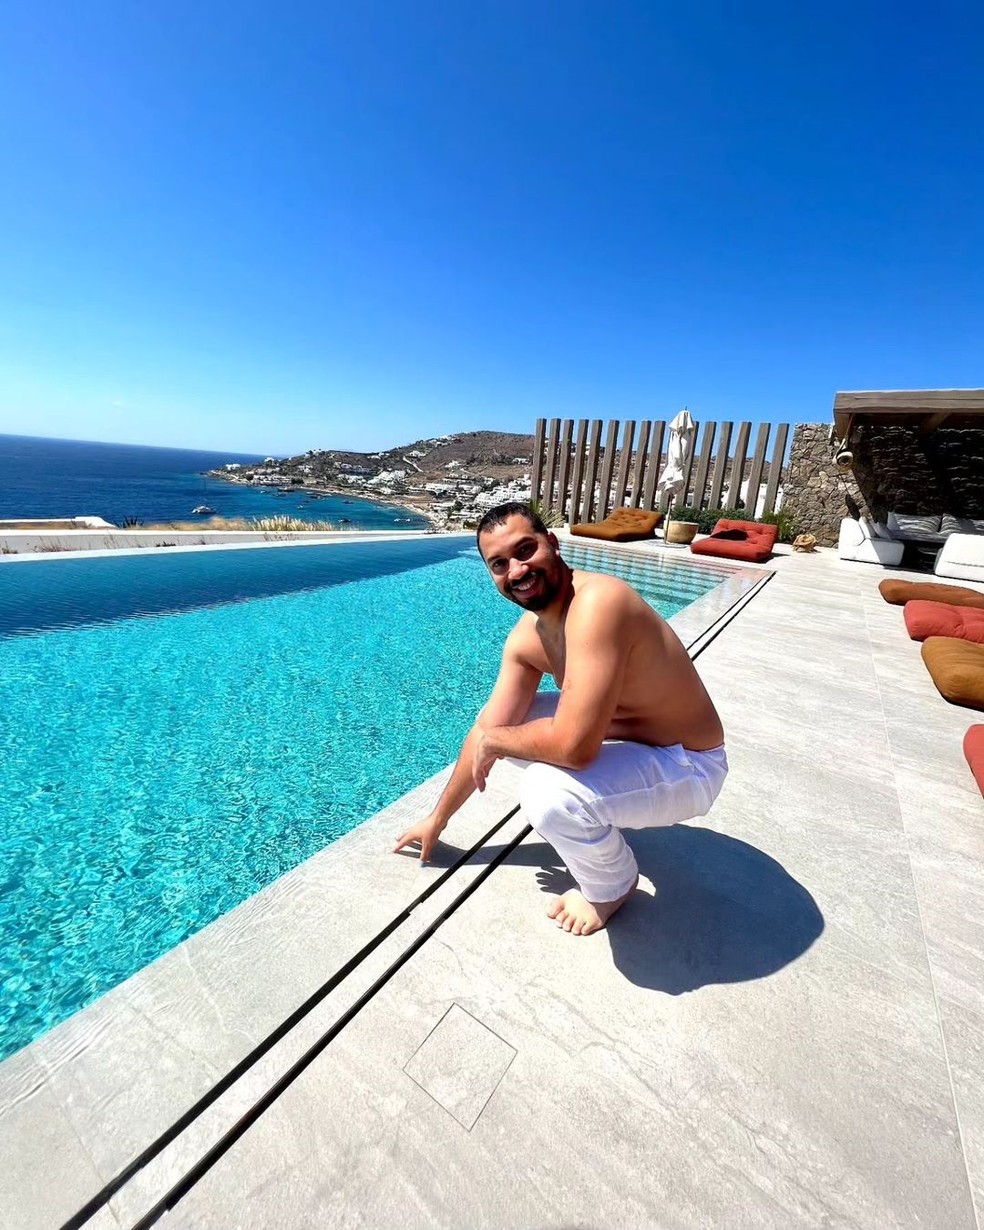 Gil do Vigor posa ao lado da piscina de borda infinita da hospedagem luxuosa — Foto: Instagram @gildovigor / Reprodução